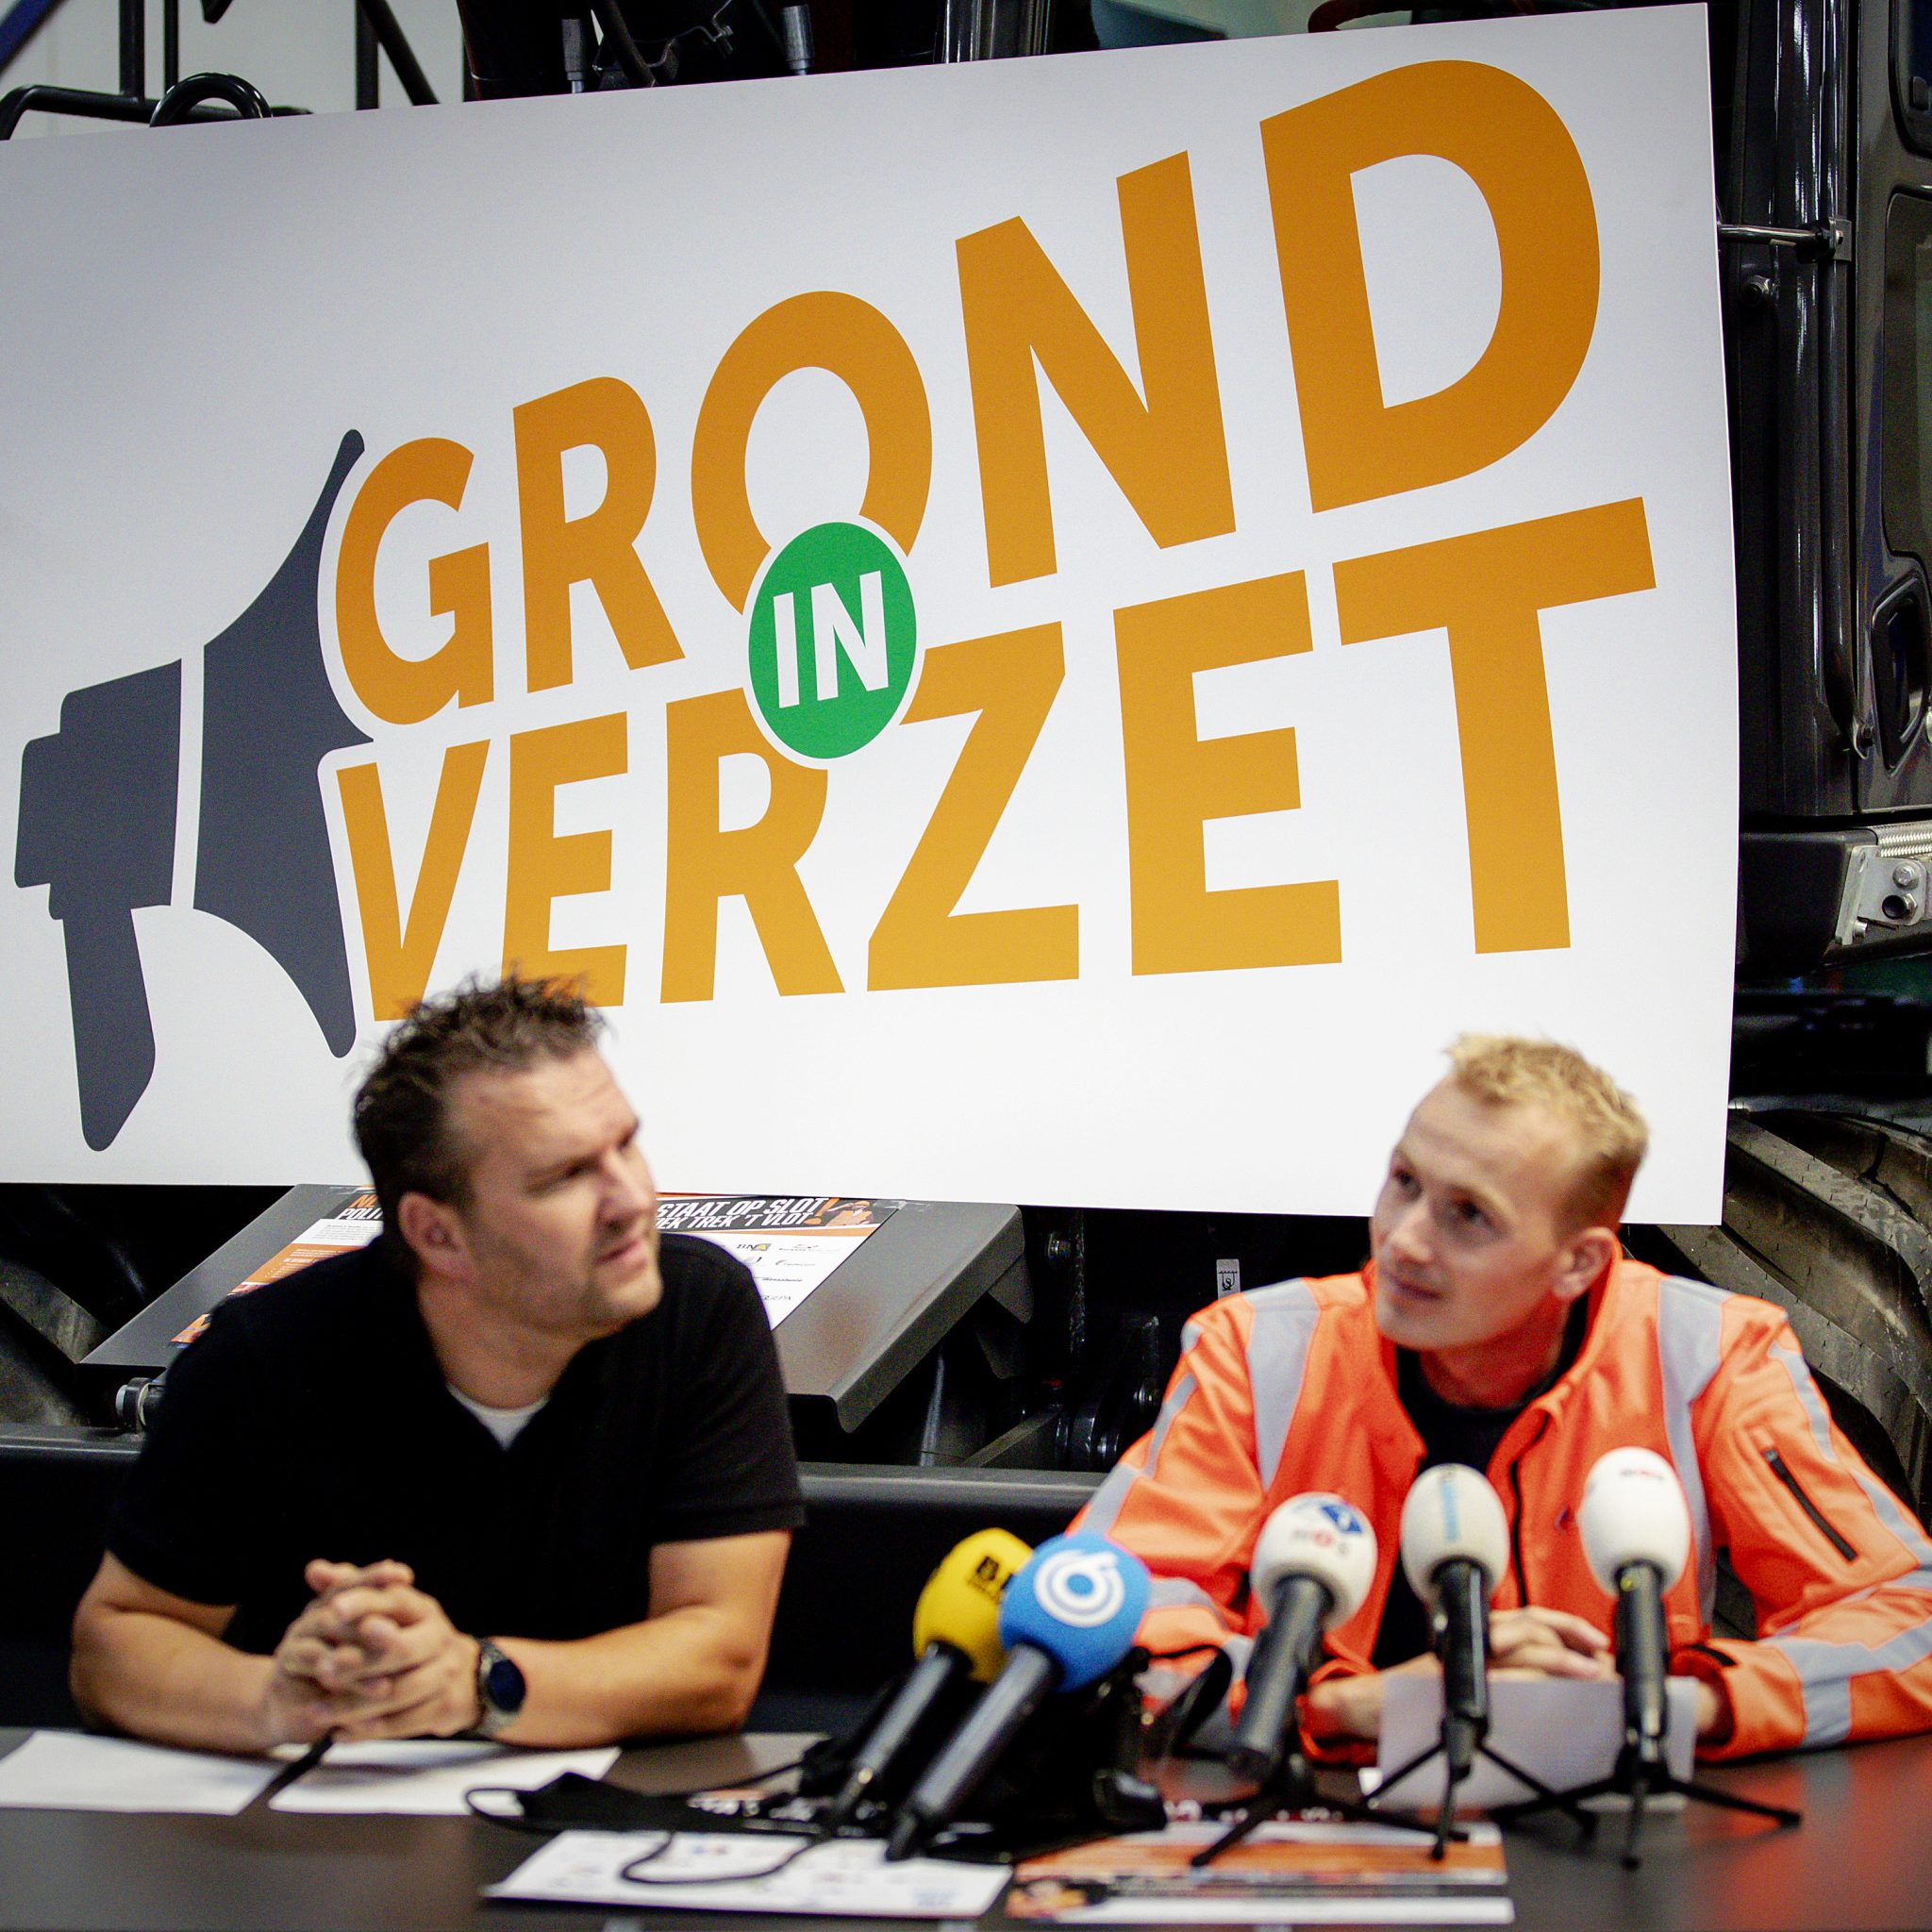 Arnold Tuytel en Klaas Kooiker, voorzitters van Stichting Grond in Verzet, tijdens een persconferentie over het Malieveldprotest van de bouwwereld tegen het stikstofbeleid. (Foto ANP / Robin van Lonkhuijsen)